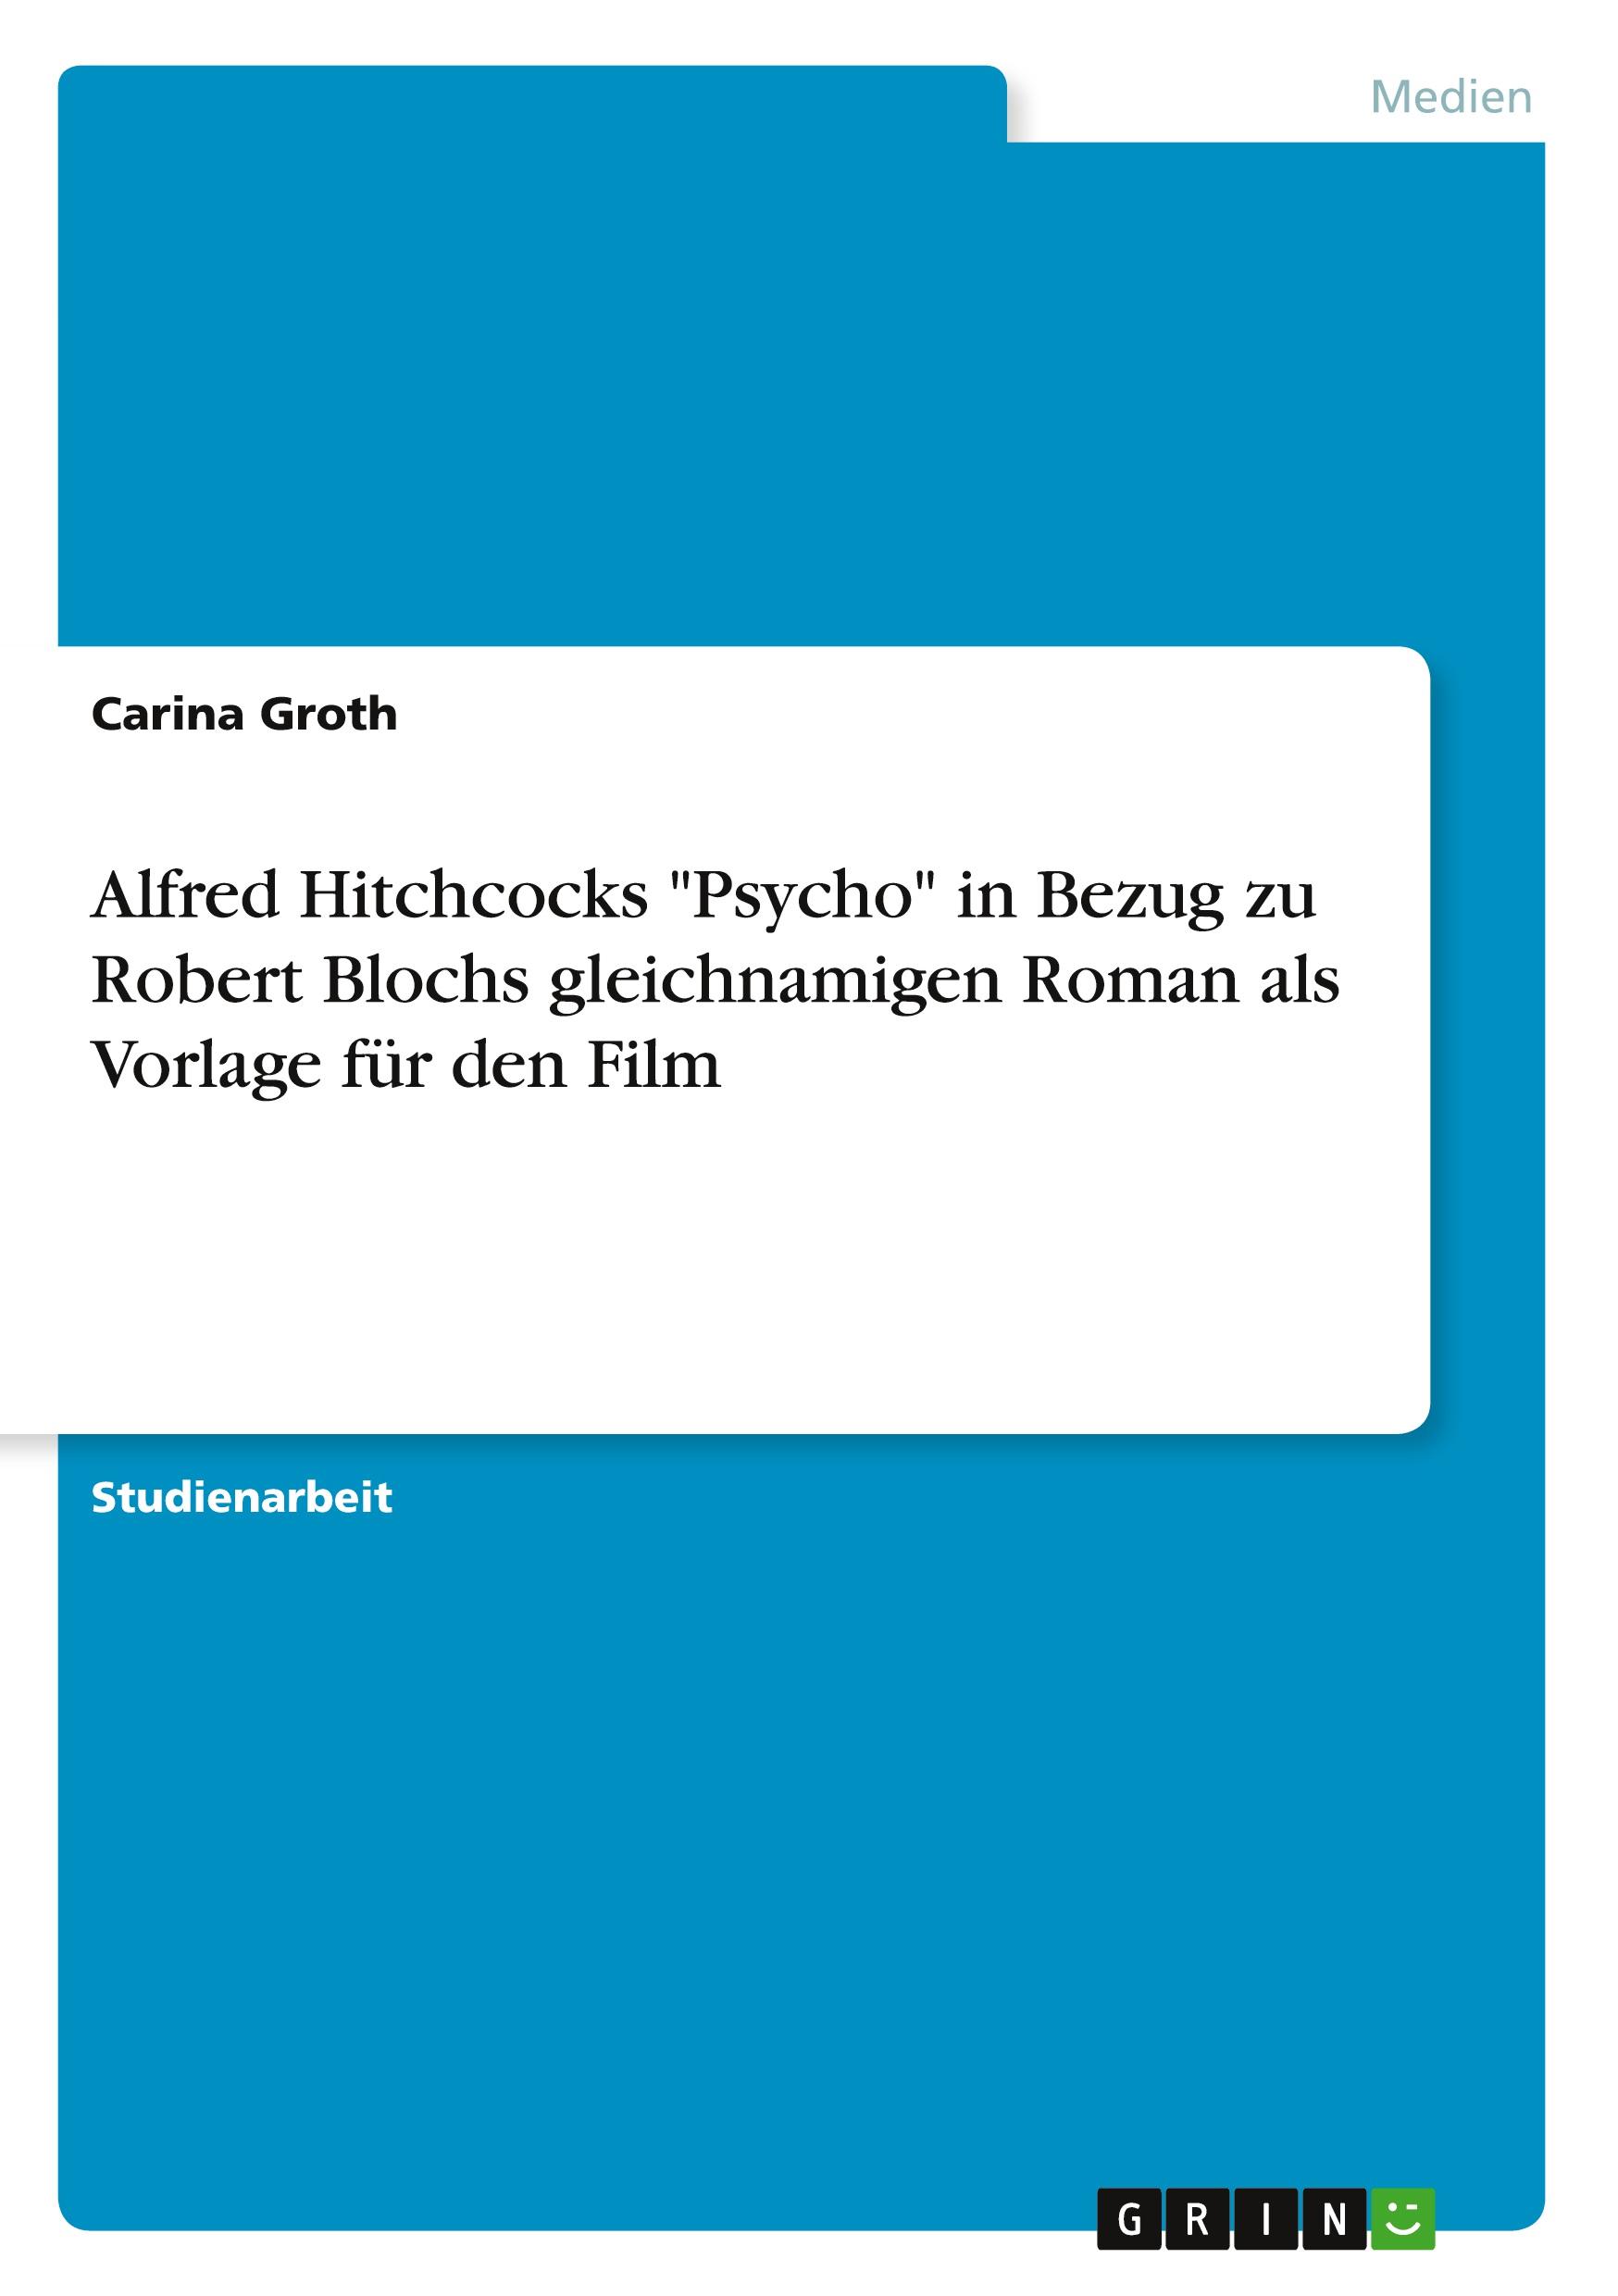 Alfred Hitchcocks "Psycho" in Bezug zu Robert Blochs gleichnamigen Roman als Vorlage für den Film